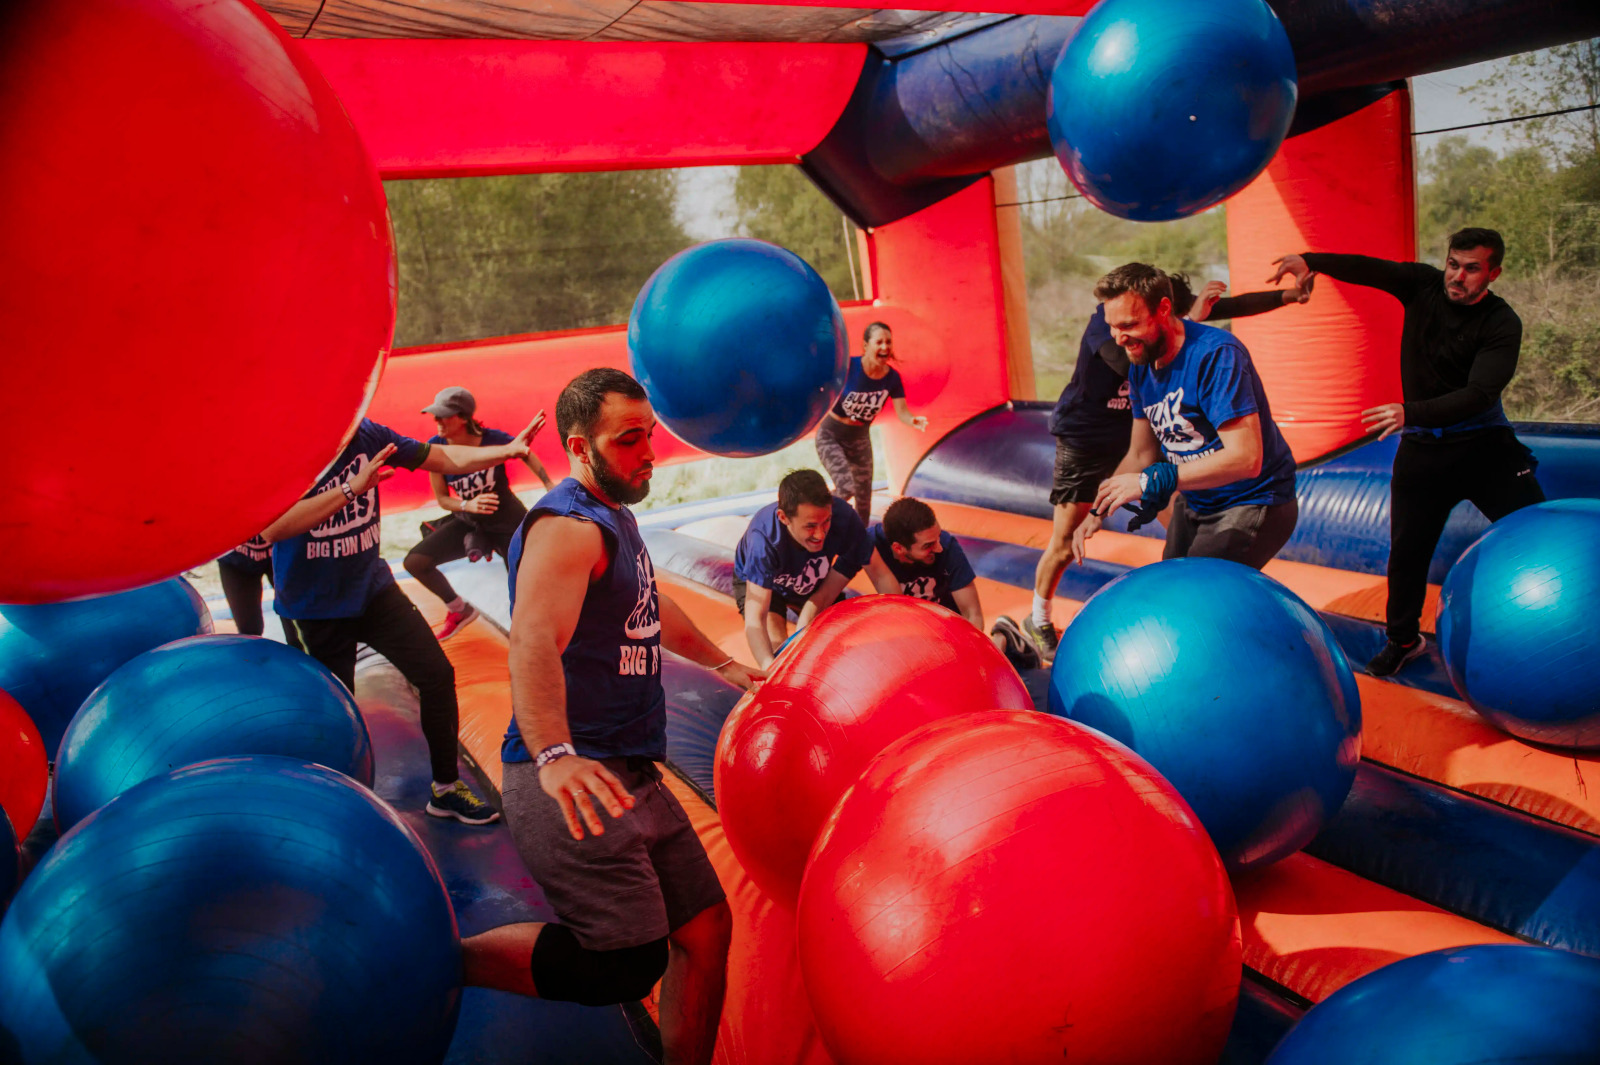 Obstacle gonflable rouge et bleu avec à l'intérieur de gros ballons